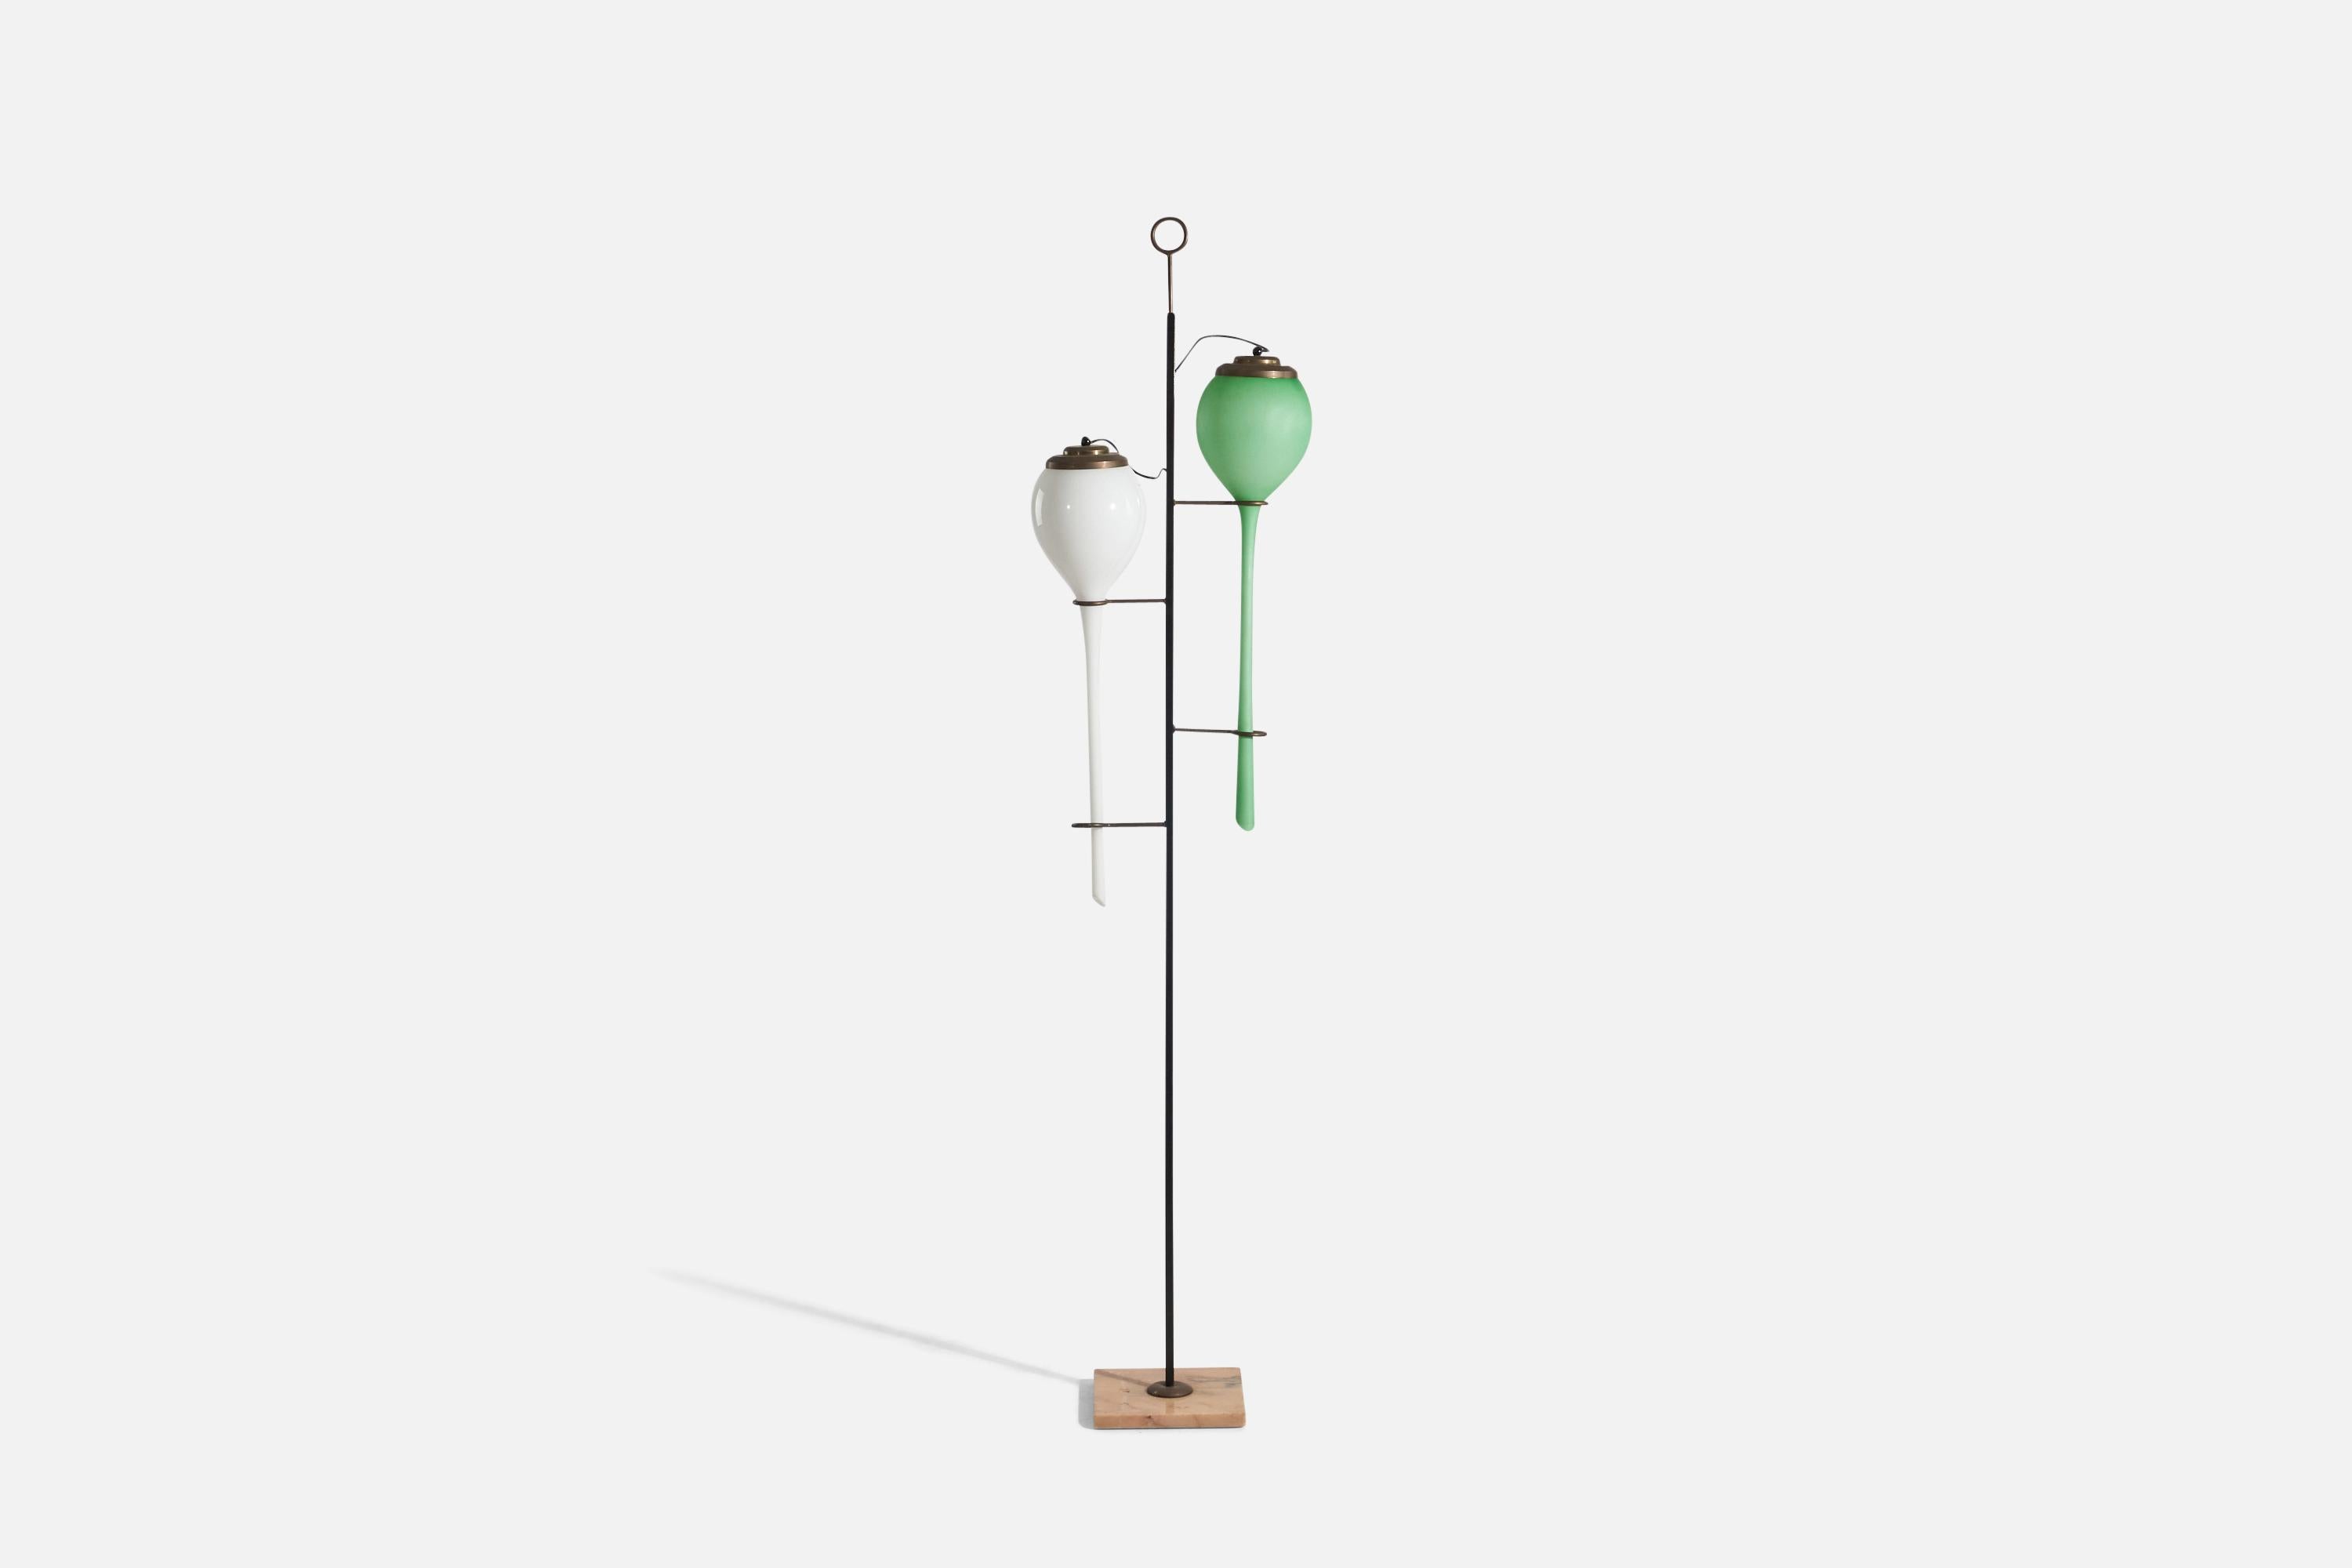 Lampadaire en verre vert et blanc, métal, laiton et marbre conçu et produit par Seguso Vetri D'arte, Italie, années 1940.

La douille accepte les ampoules standard E-26 à culot moyen.

Il n'y a pas de puissance maximale indiquée sur le luminaire.